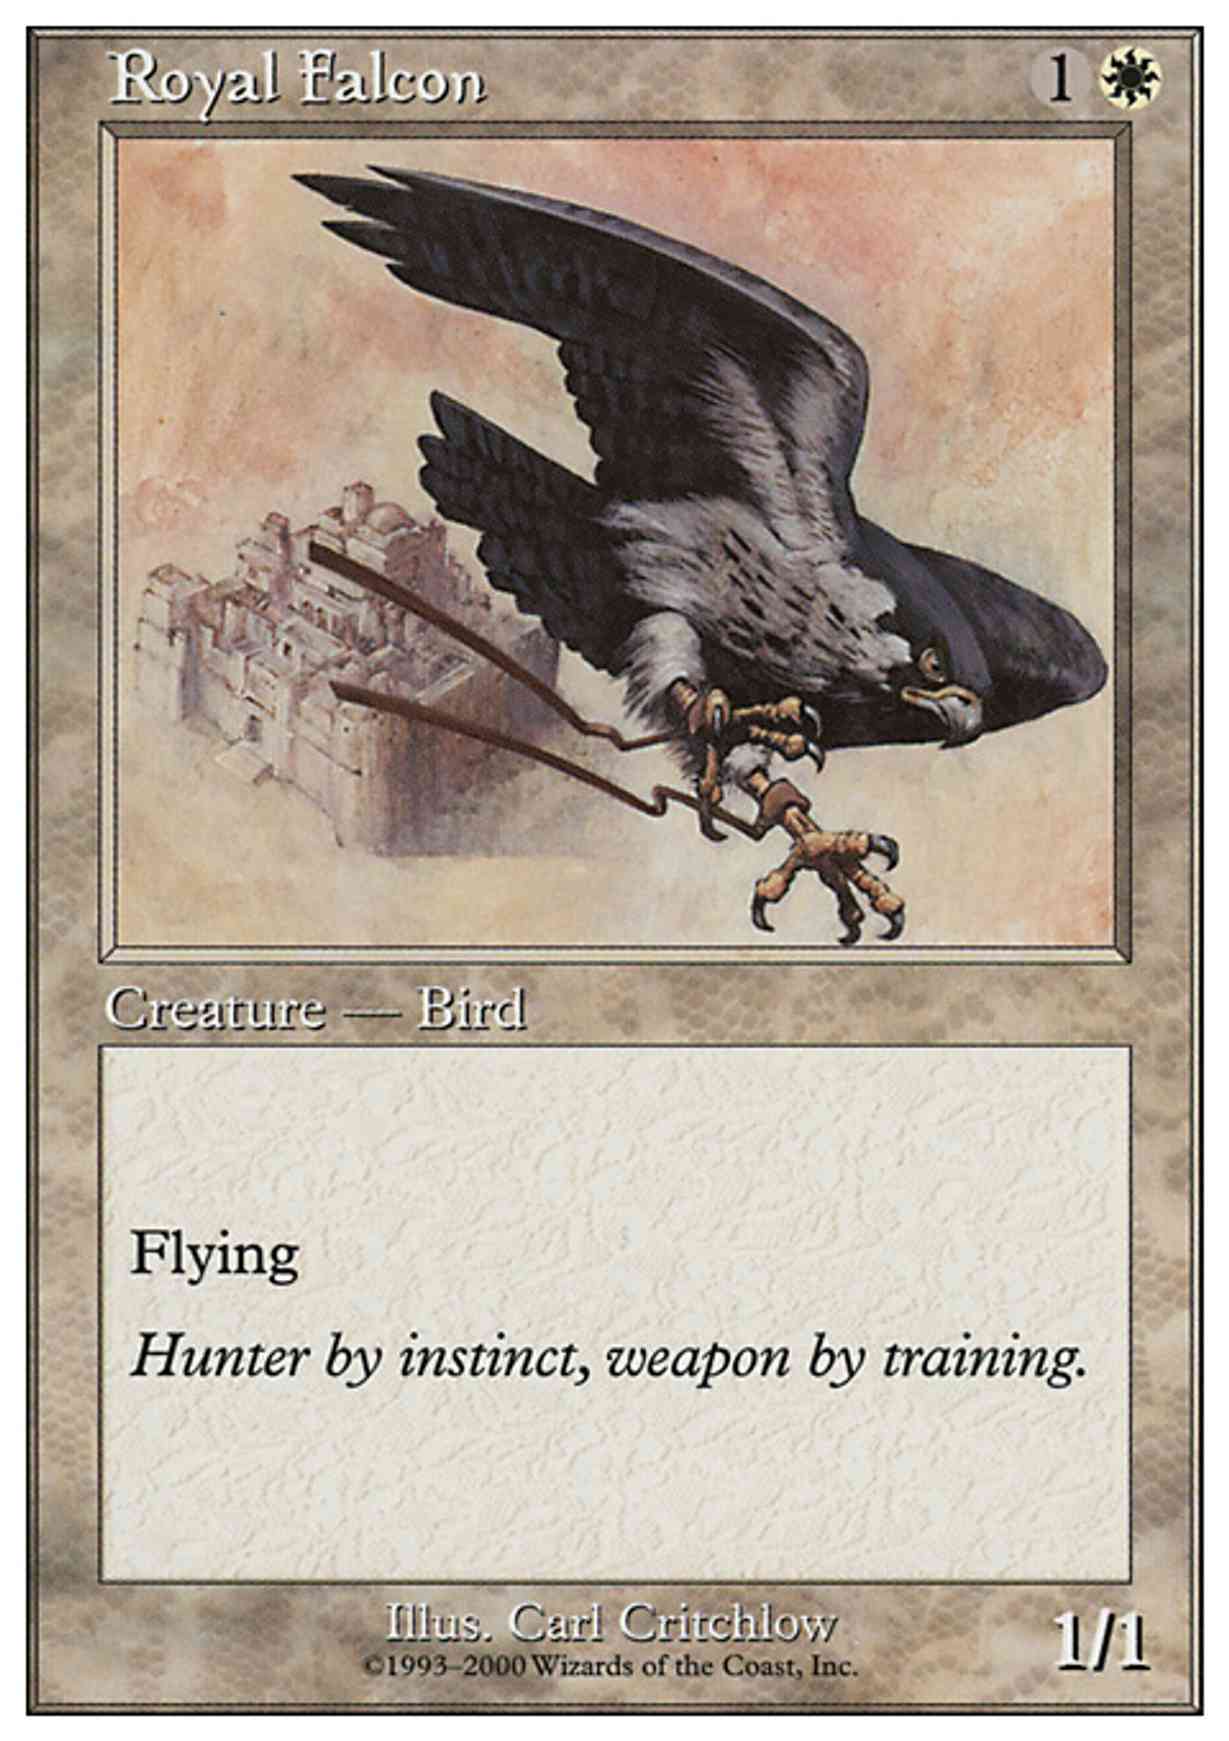 Royal Falcon magic card front